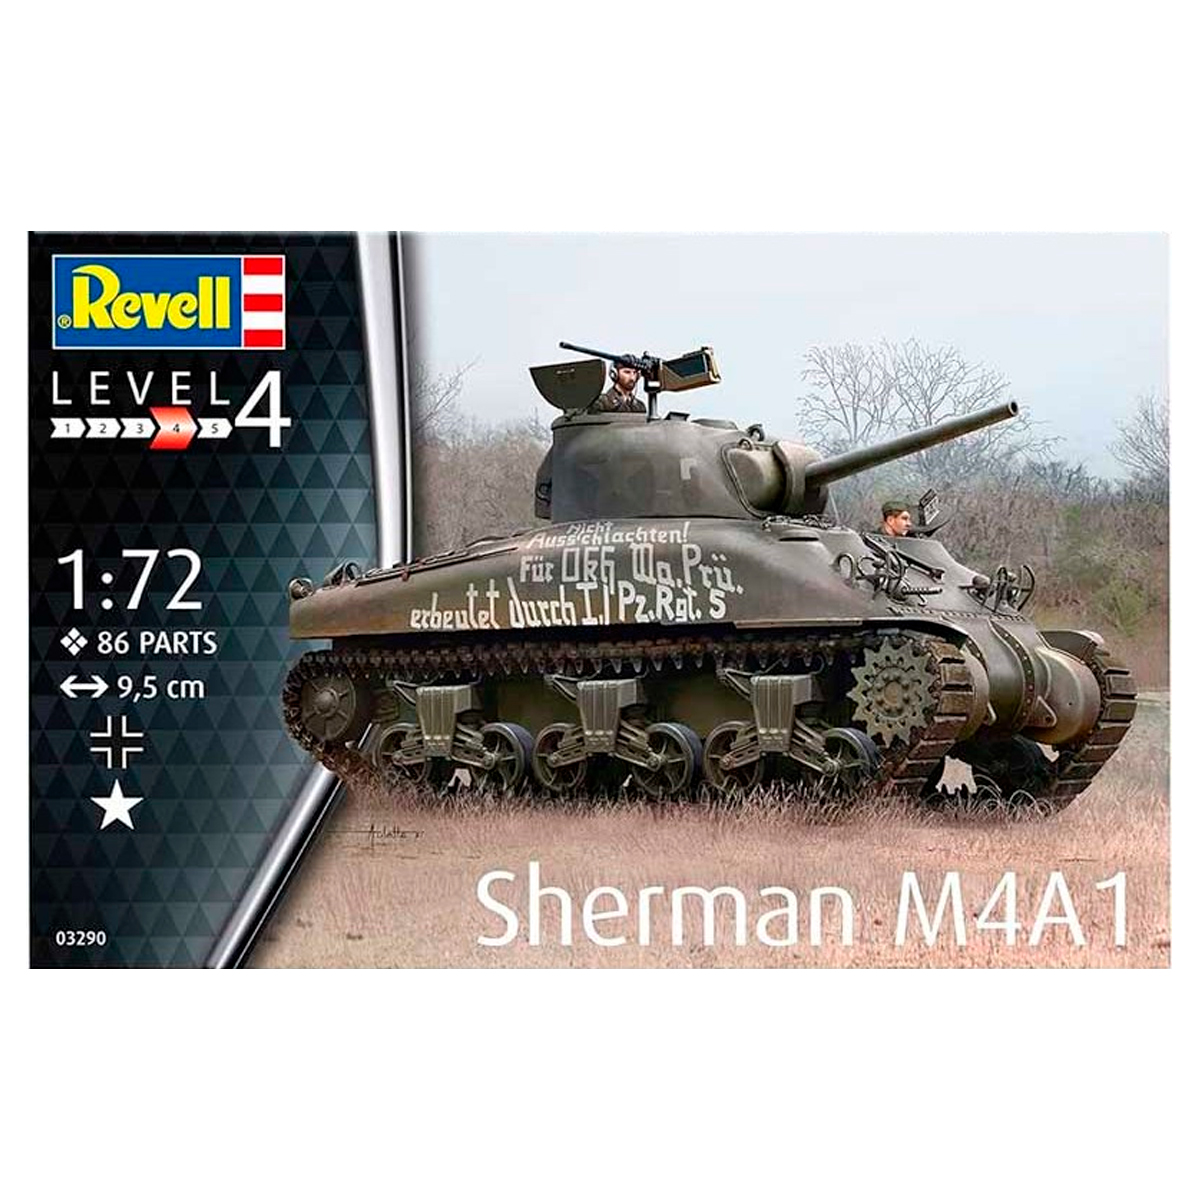 Sherman M4A1 1/72